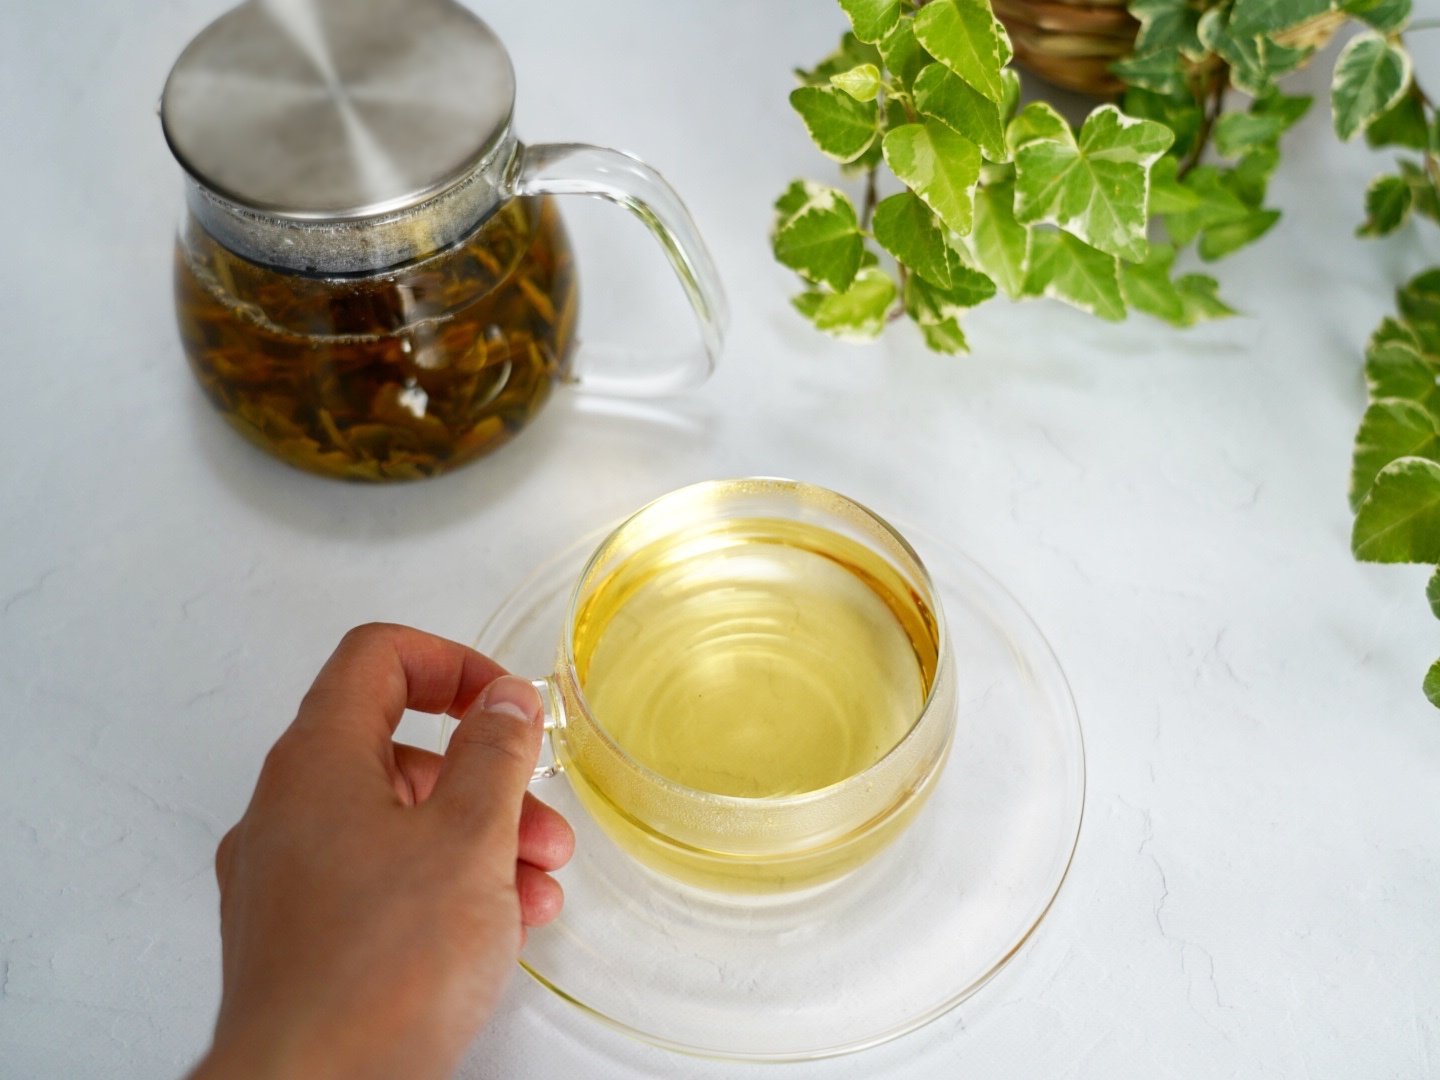 【2022年】 春摘み紅茶 -CLASSIC TEA- (茶葉 45g)